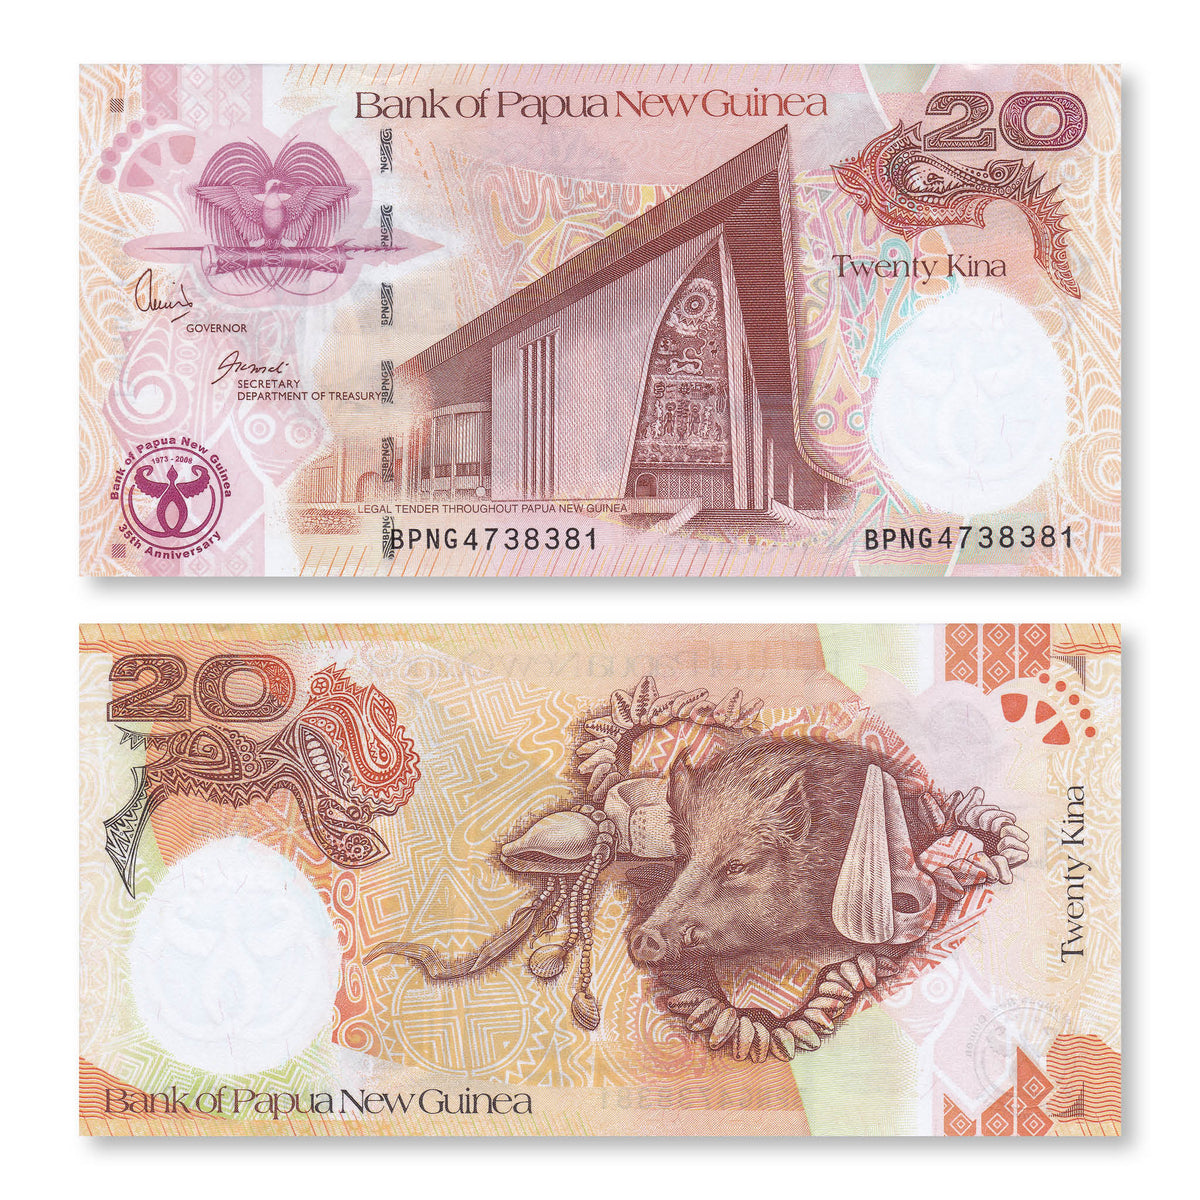 Papua New Guinea 20 Kina, 2008, B141a, P36a, UNC - Robert's World Money - World Banknotes